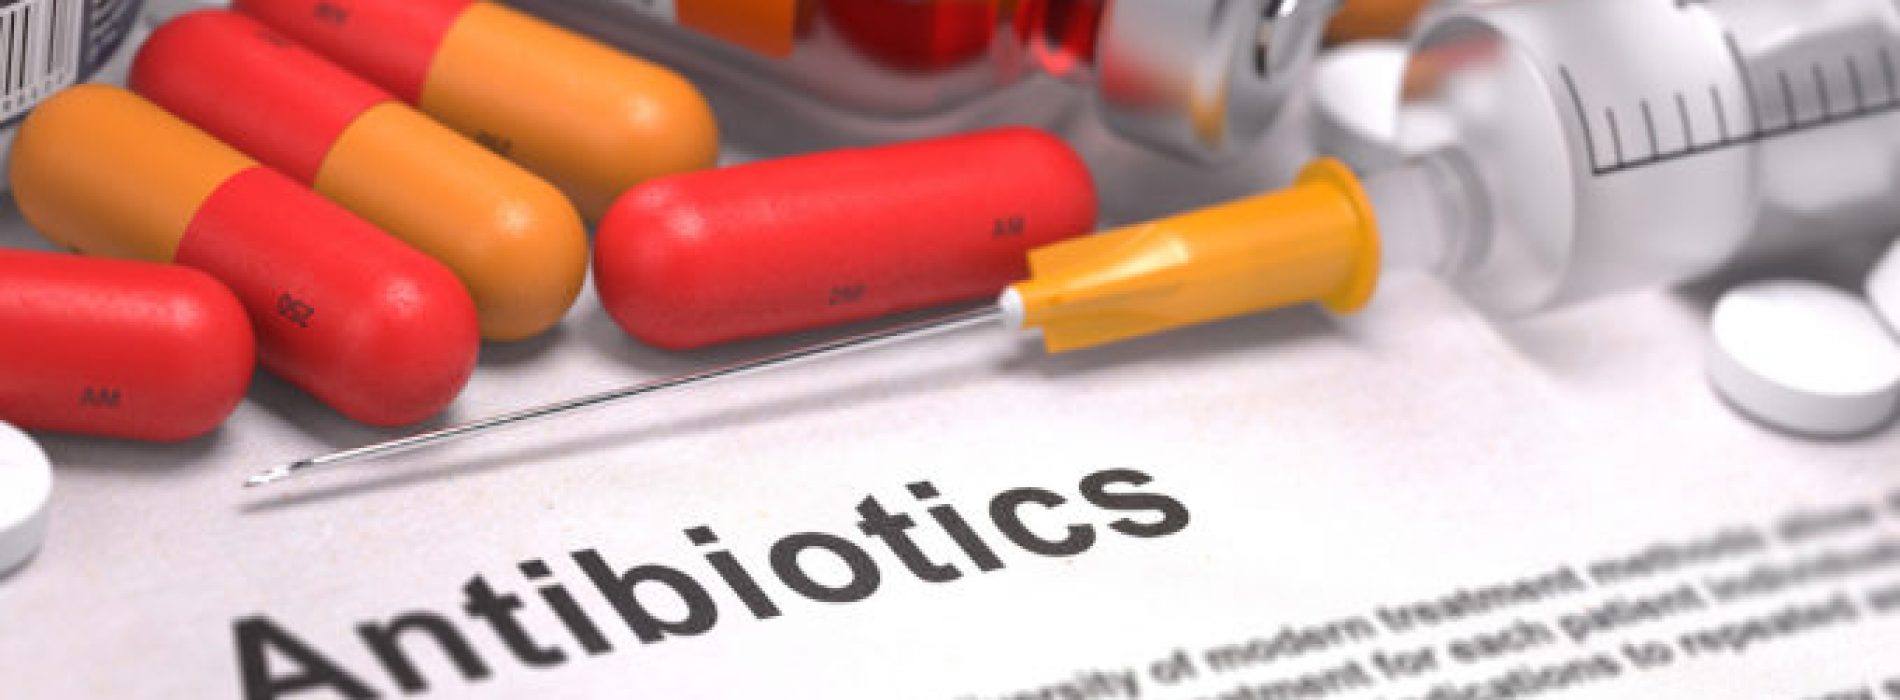 Huisartsen schrijven te veel antibiotica voor bij luchtweginfecties